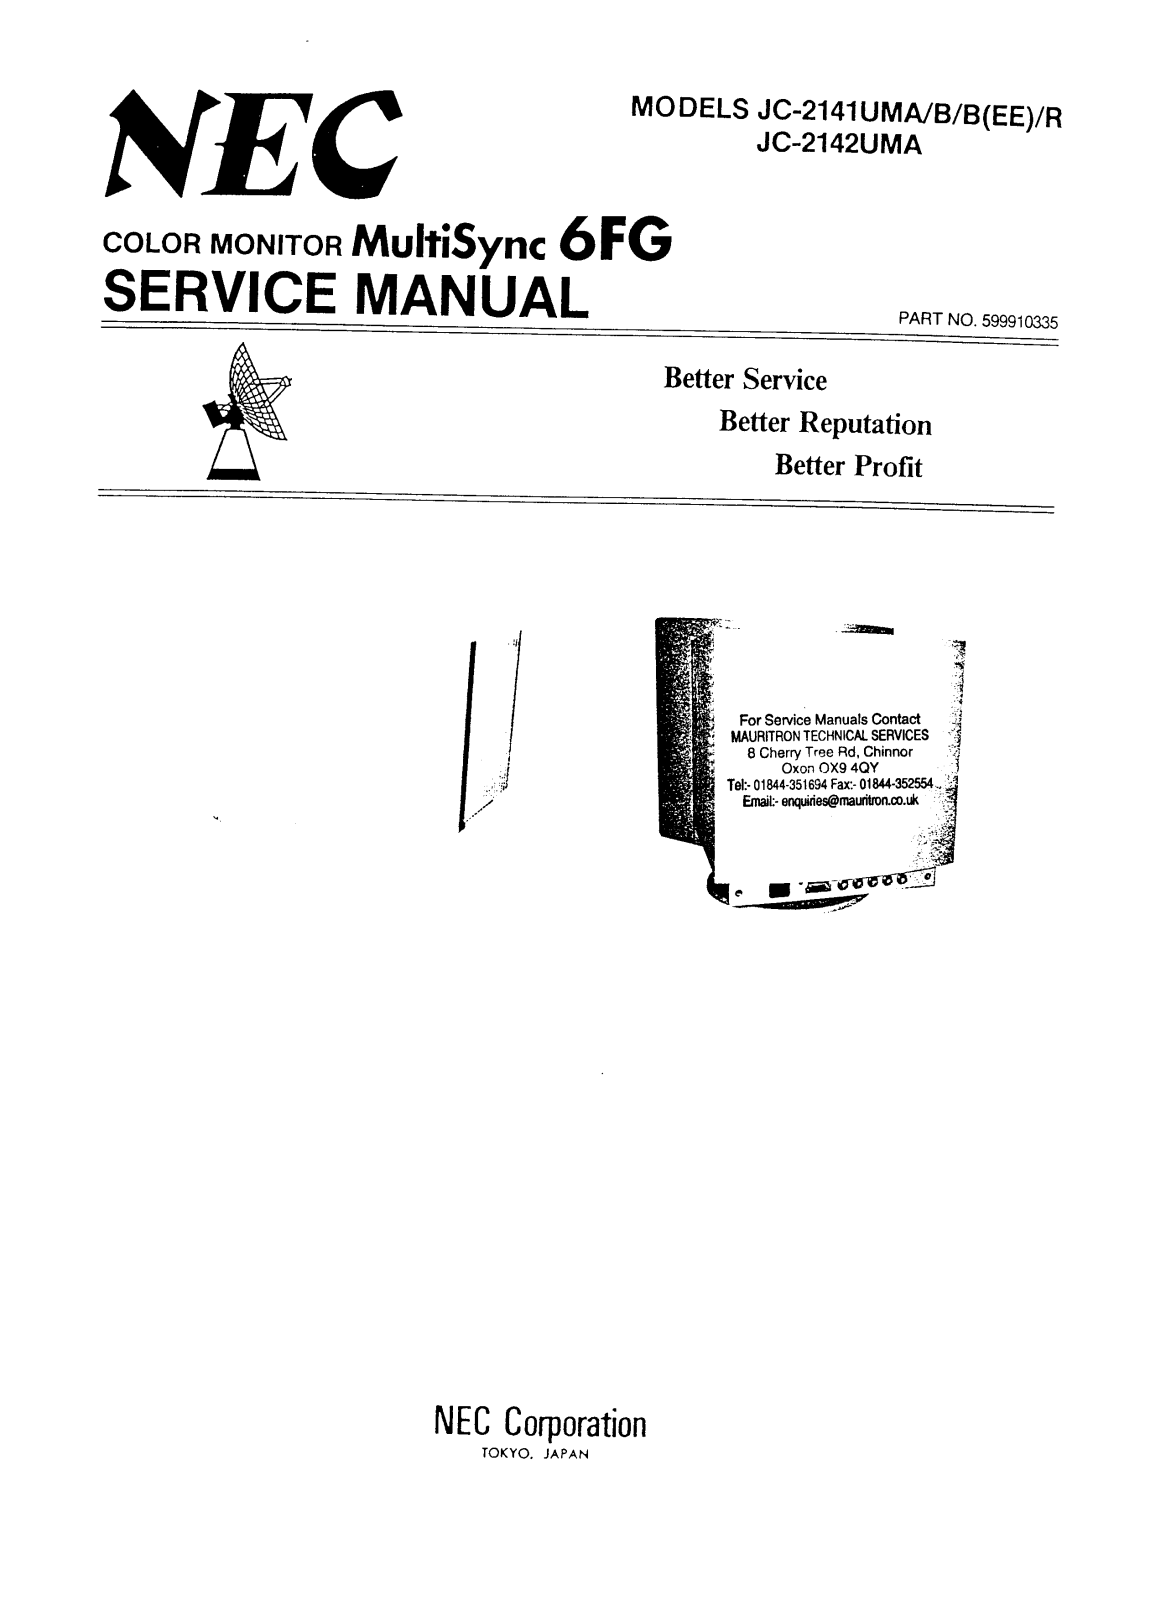 NEC JC-2141UMA Service Manual